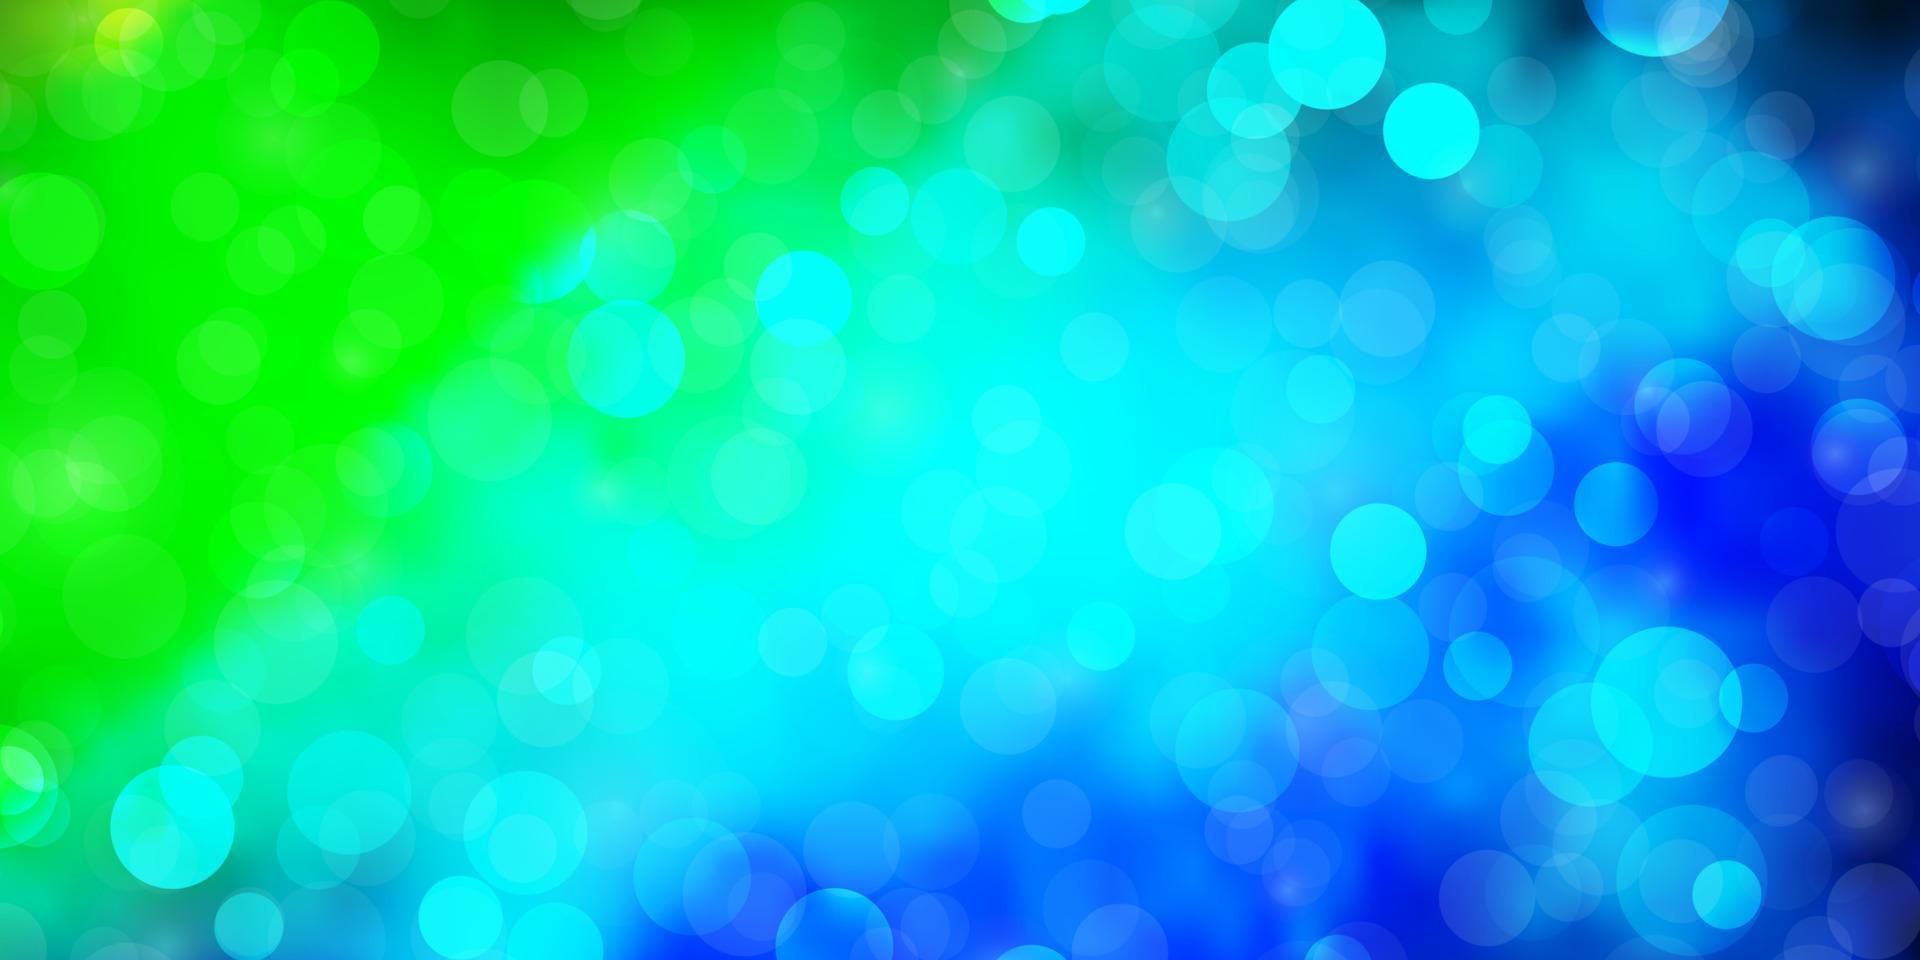 sfondo vettoriale azzurro, verde con cerchi.